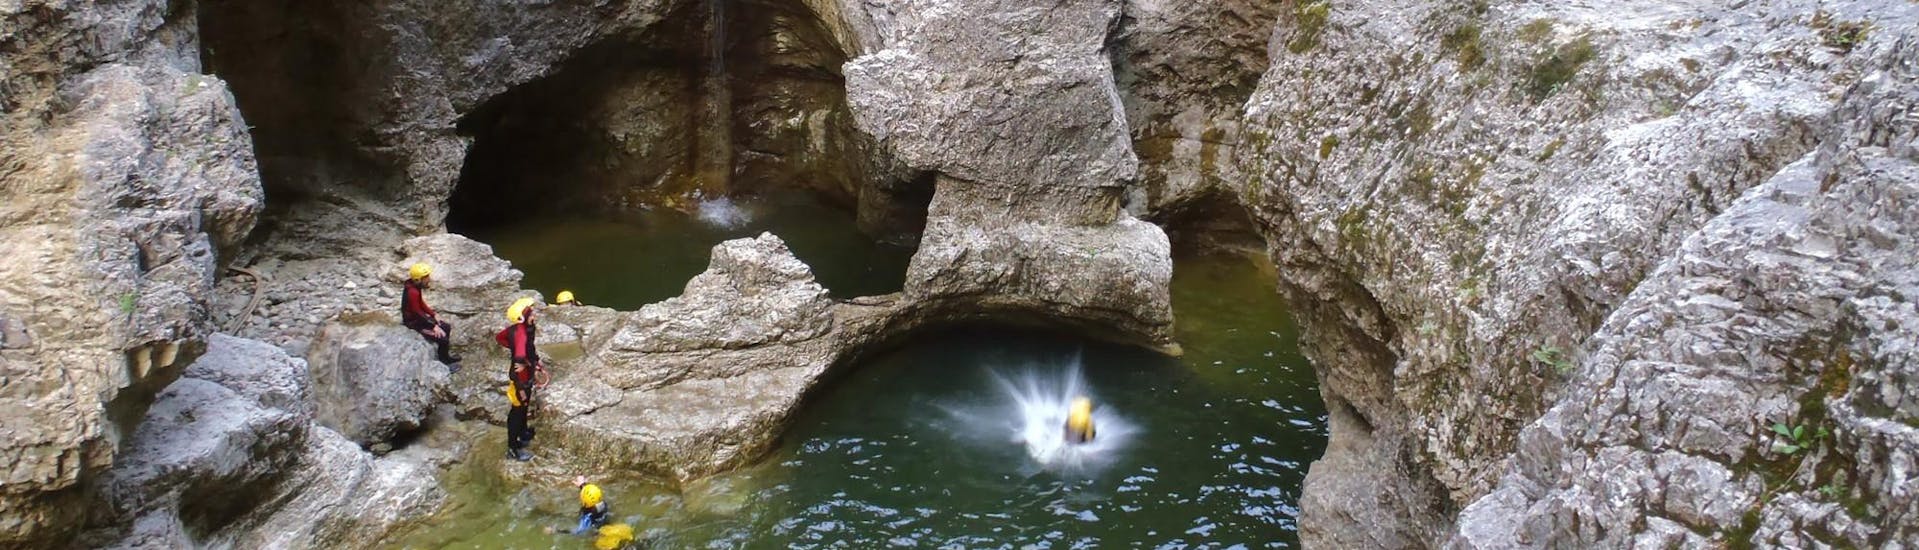 Person springt ins Wasser beim Canyoning in der Almbachklamm - Schwiss Cheese Tour mit Crocodile Sports Salzburg.